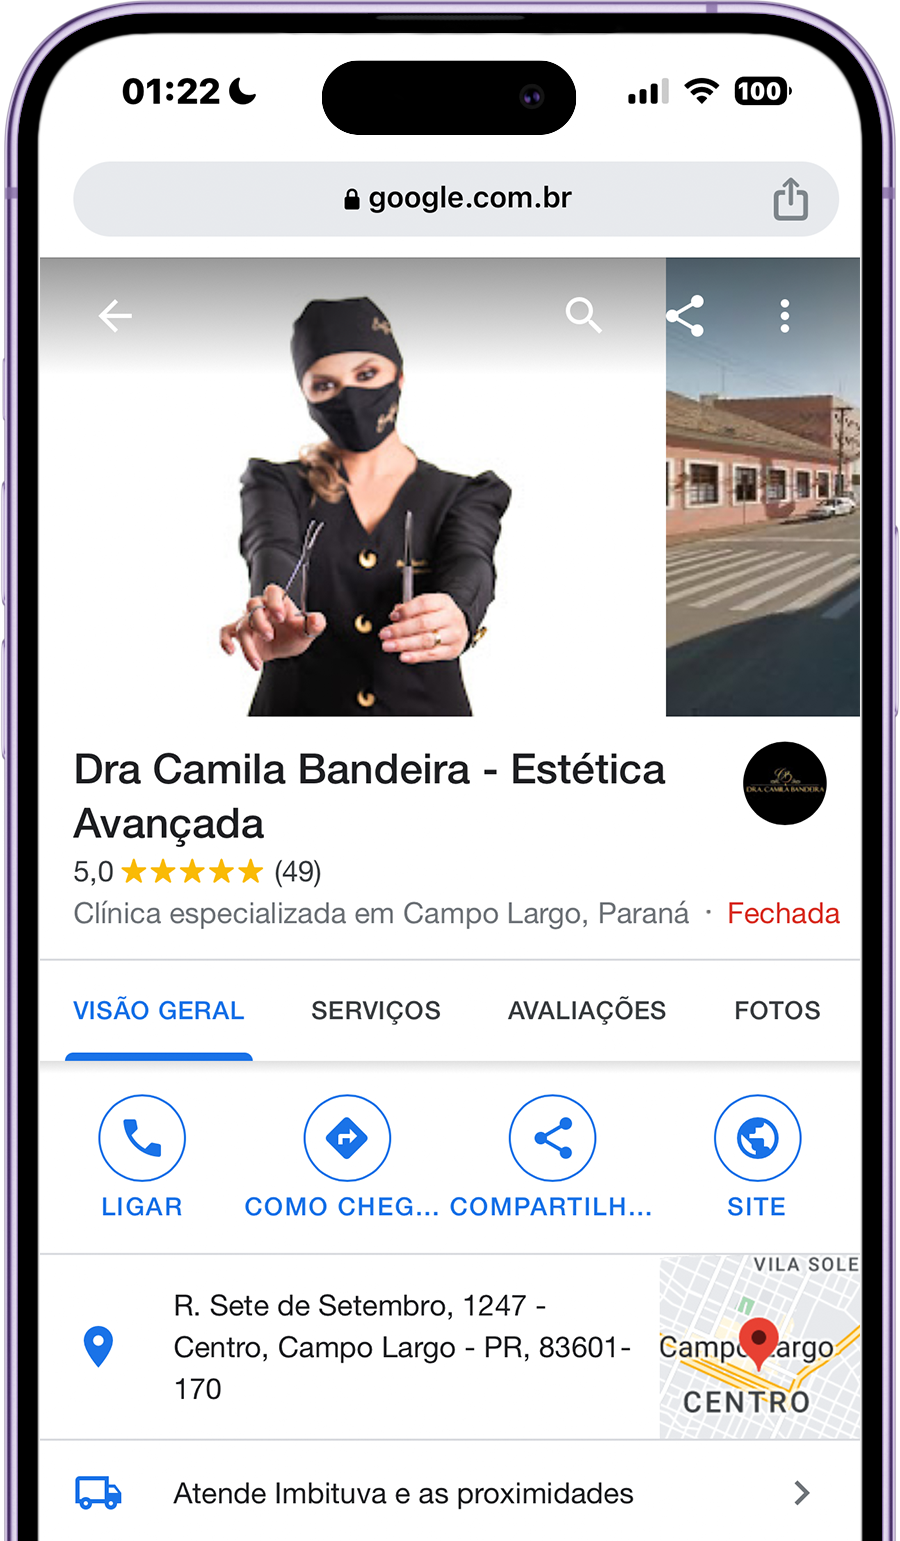 Dra. Camila Bandeira - Avaliação Google 5 Estrelas